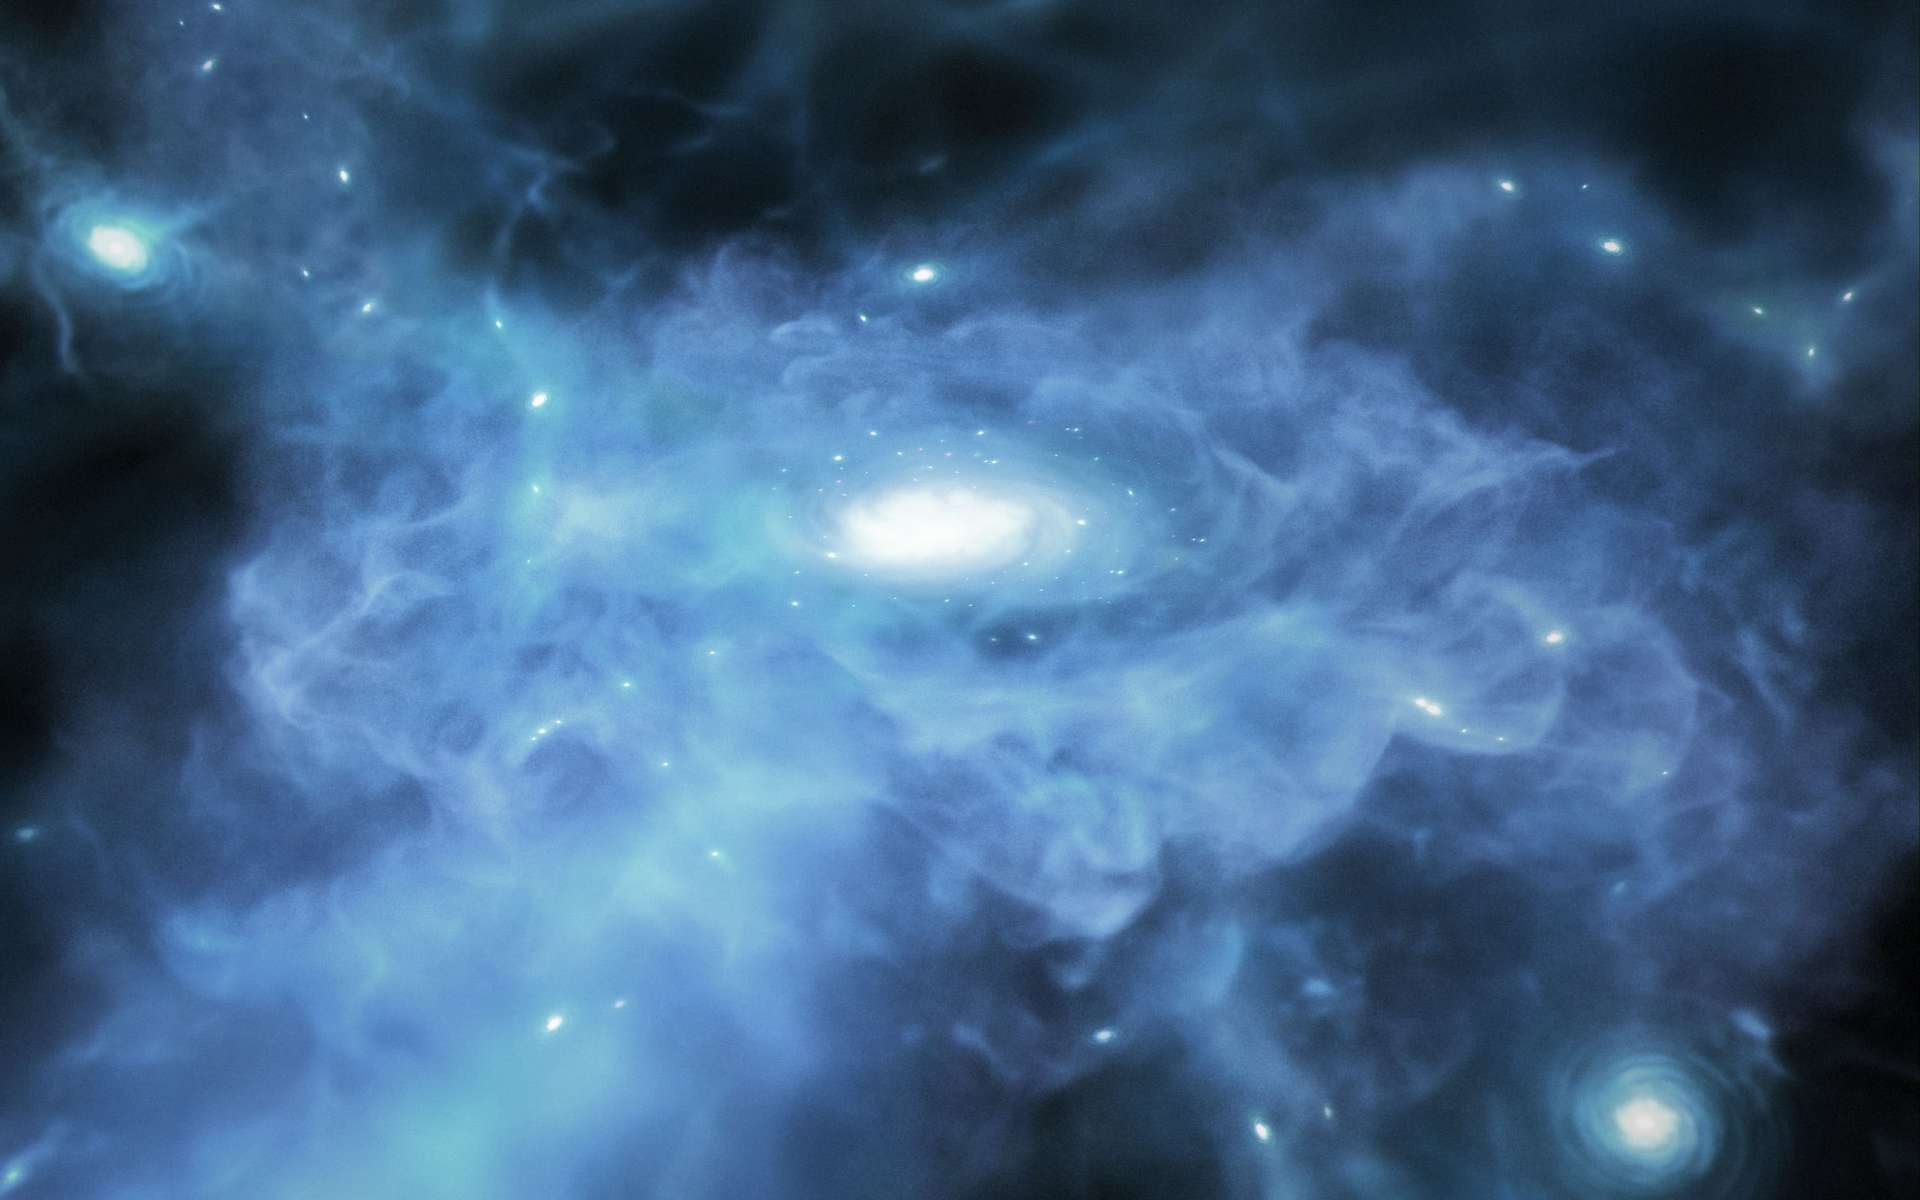 Le télescope James-Webb aurait détecté la formation des premières galaxies de l'Univers !